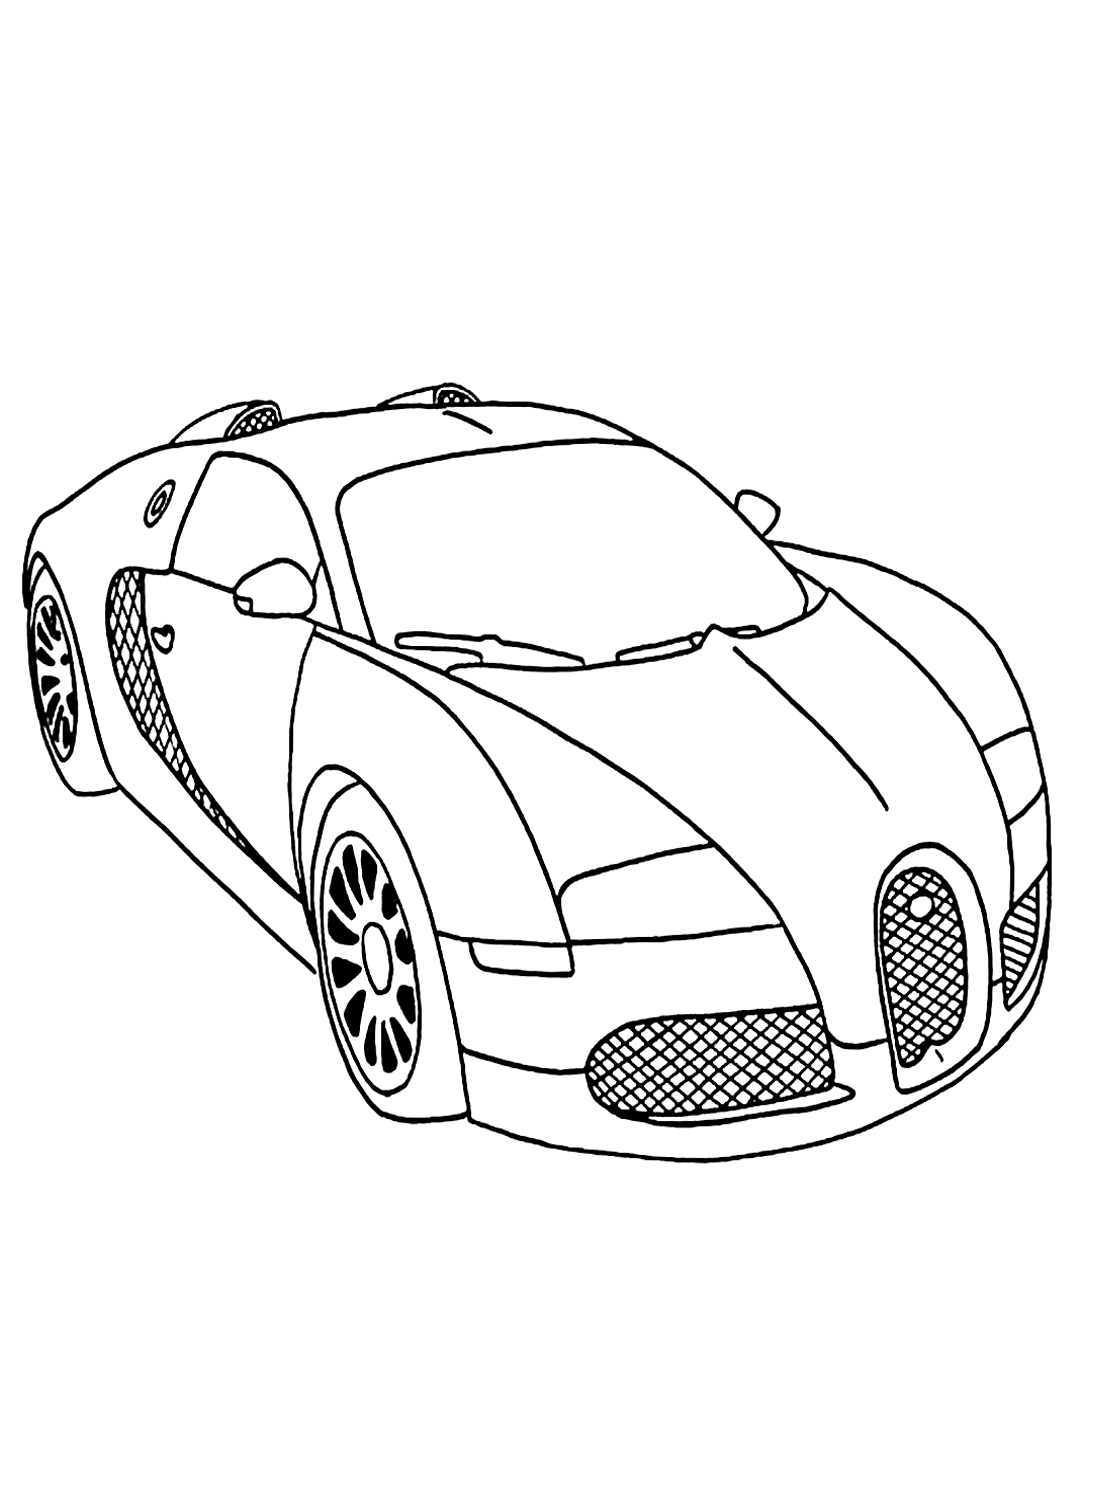 Imagen en color del coche de carreras de Racing Car